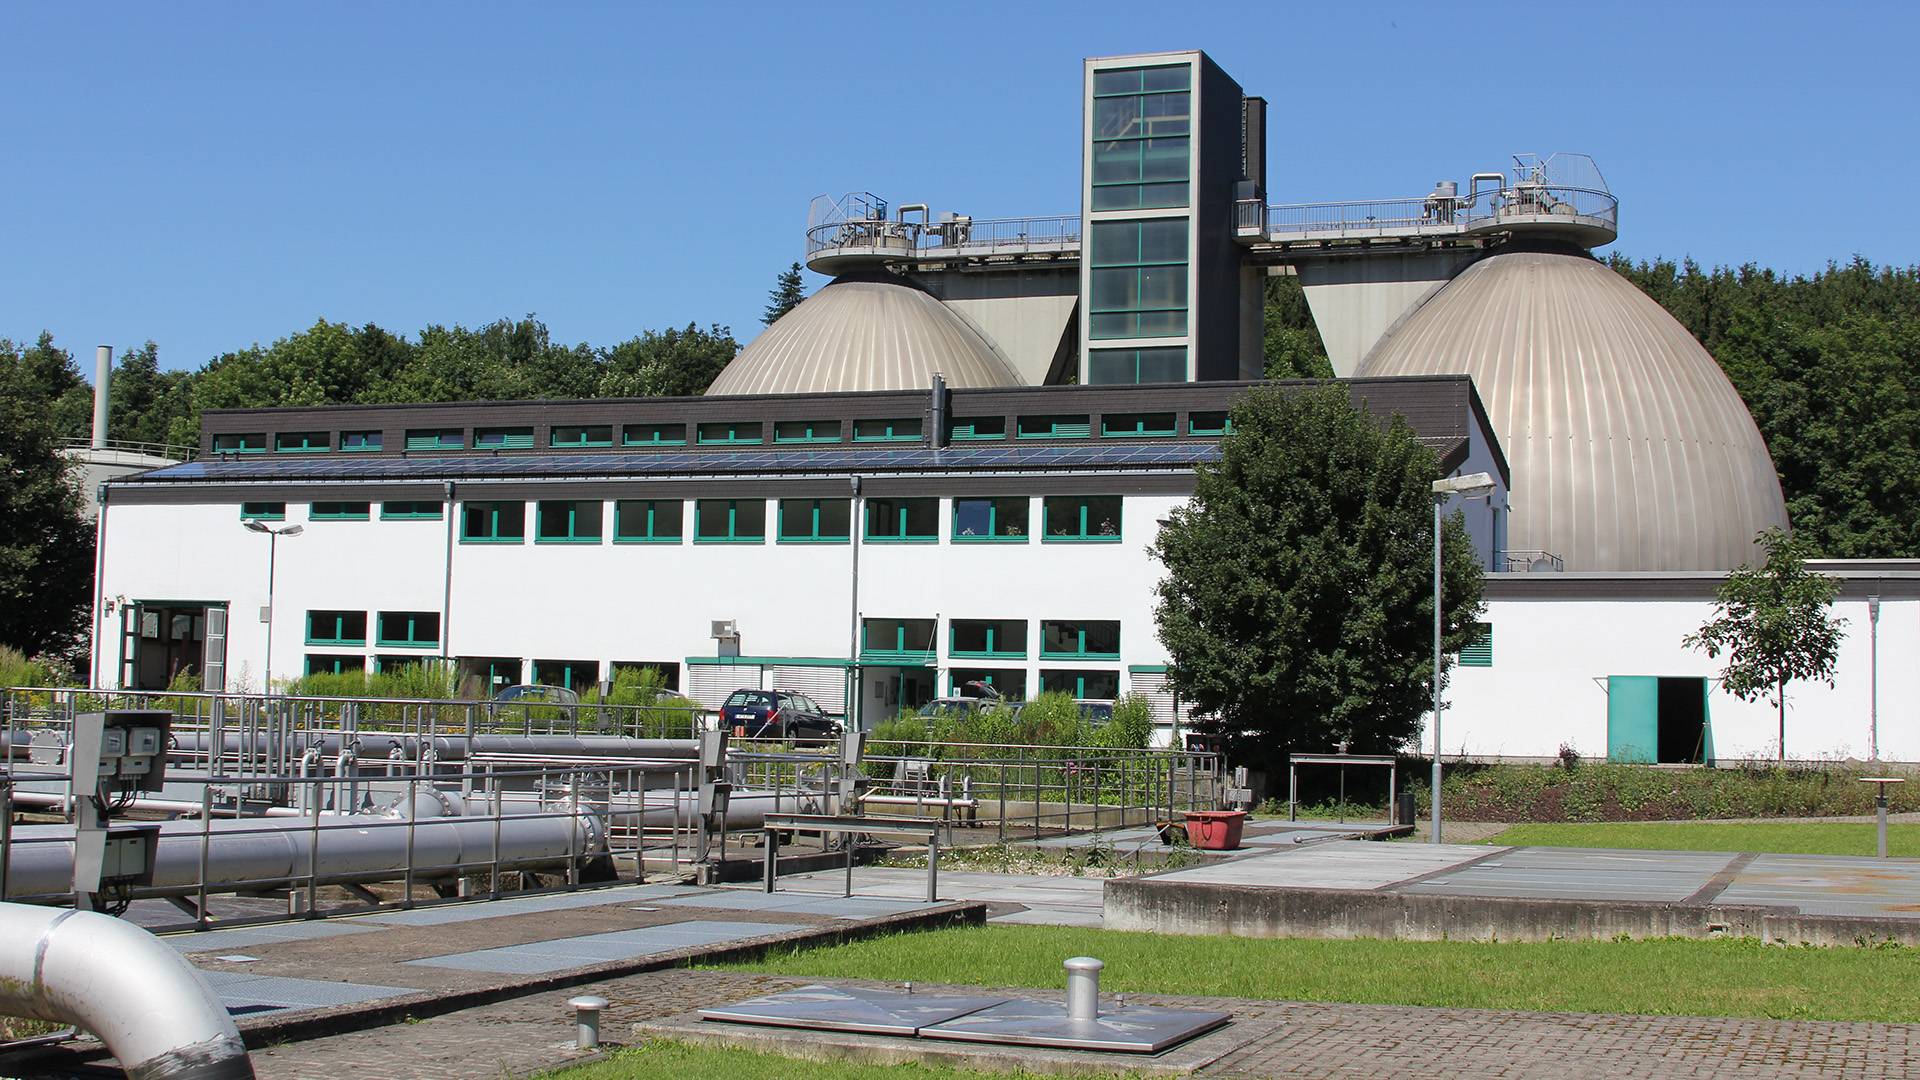  Die Kläranlage Kohlfurth mit den Faulbehältern. Dort entsteht das Klärgas, das im Blockheizkraftwerk in Strom und Wärme umgewandelt wird. 